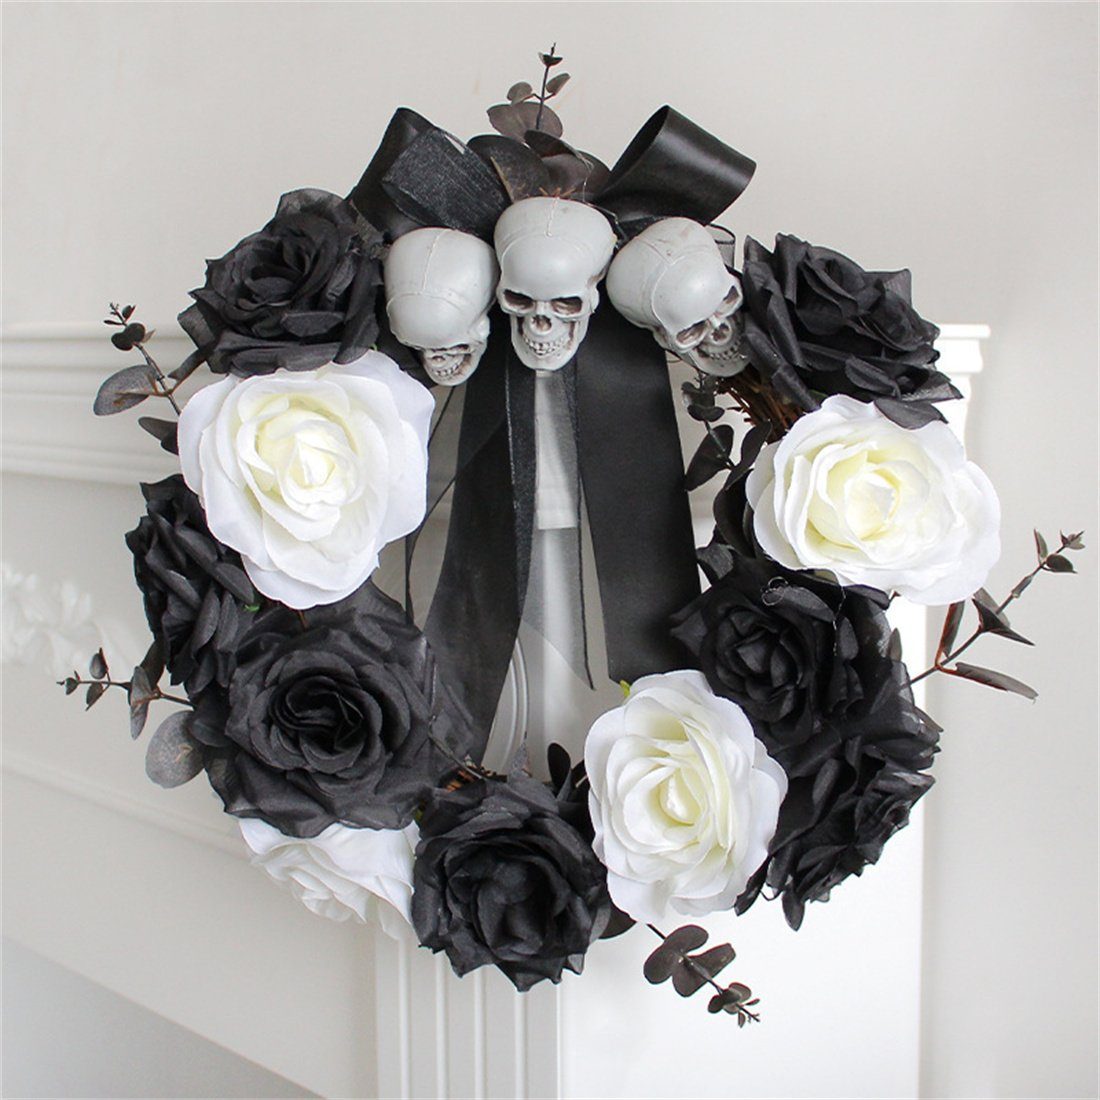 und Halloween als DÖRÖY Türbehang, Kunstgirlande Skelettkranz Rosenkranz, weißer Schwarzer